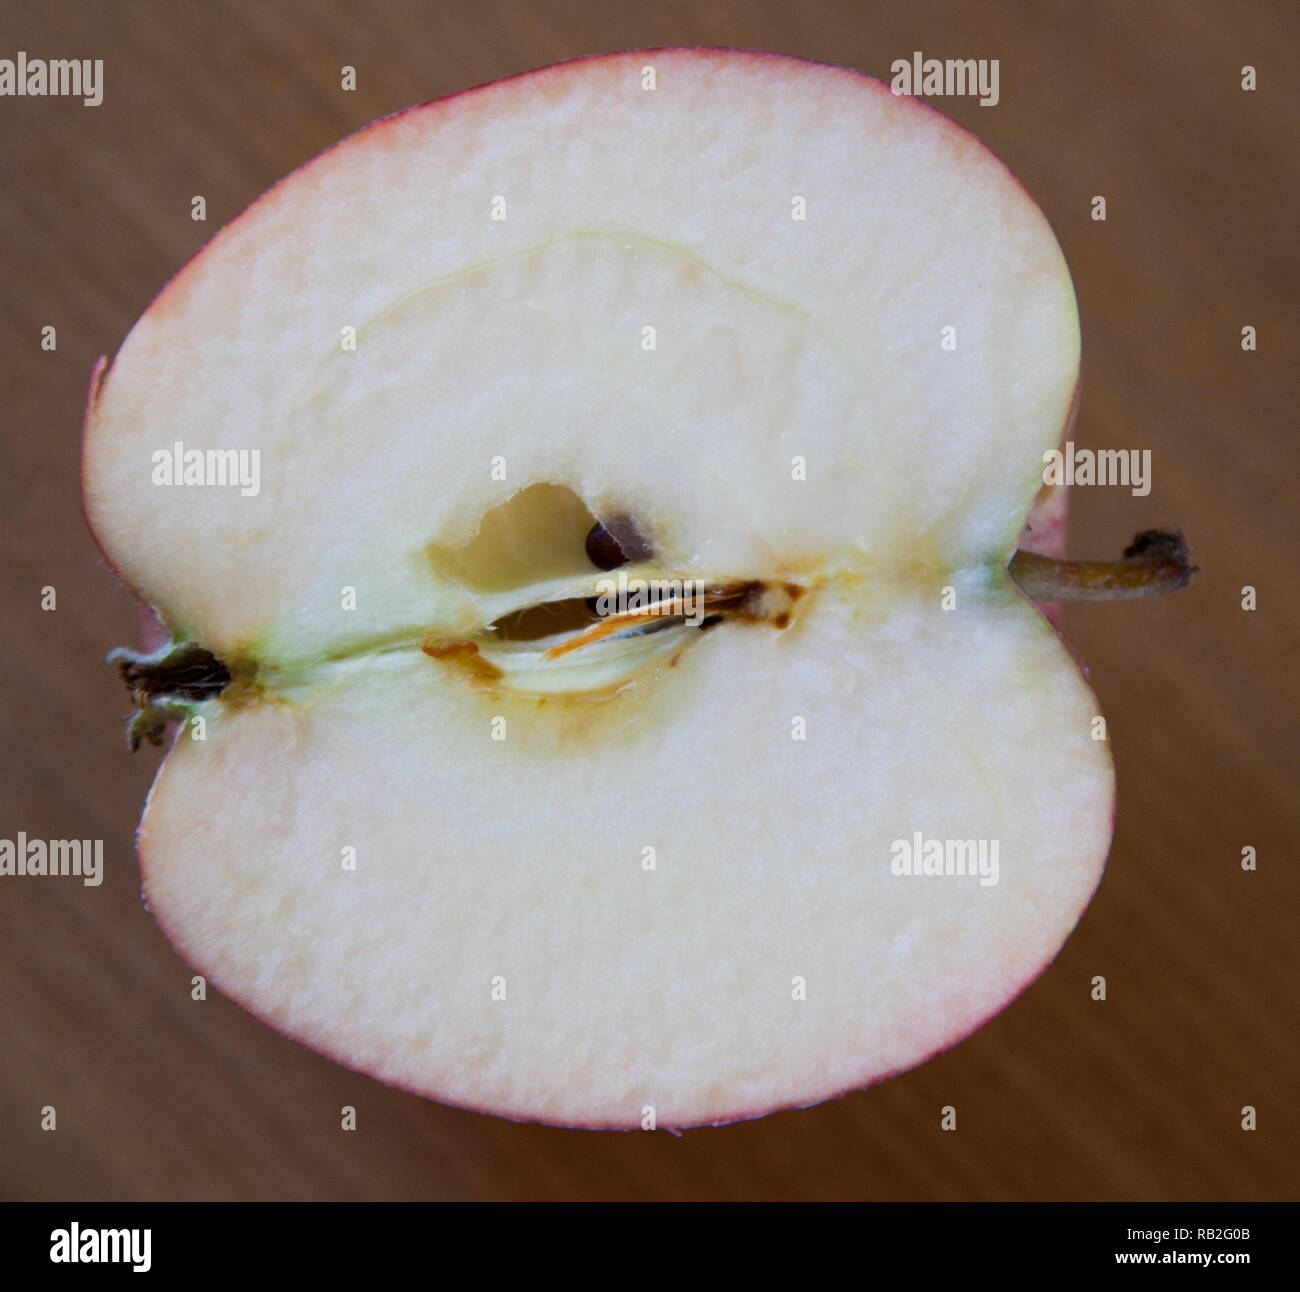 Mitad de Apple con su apple-pip core Foto de stock